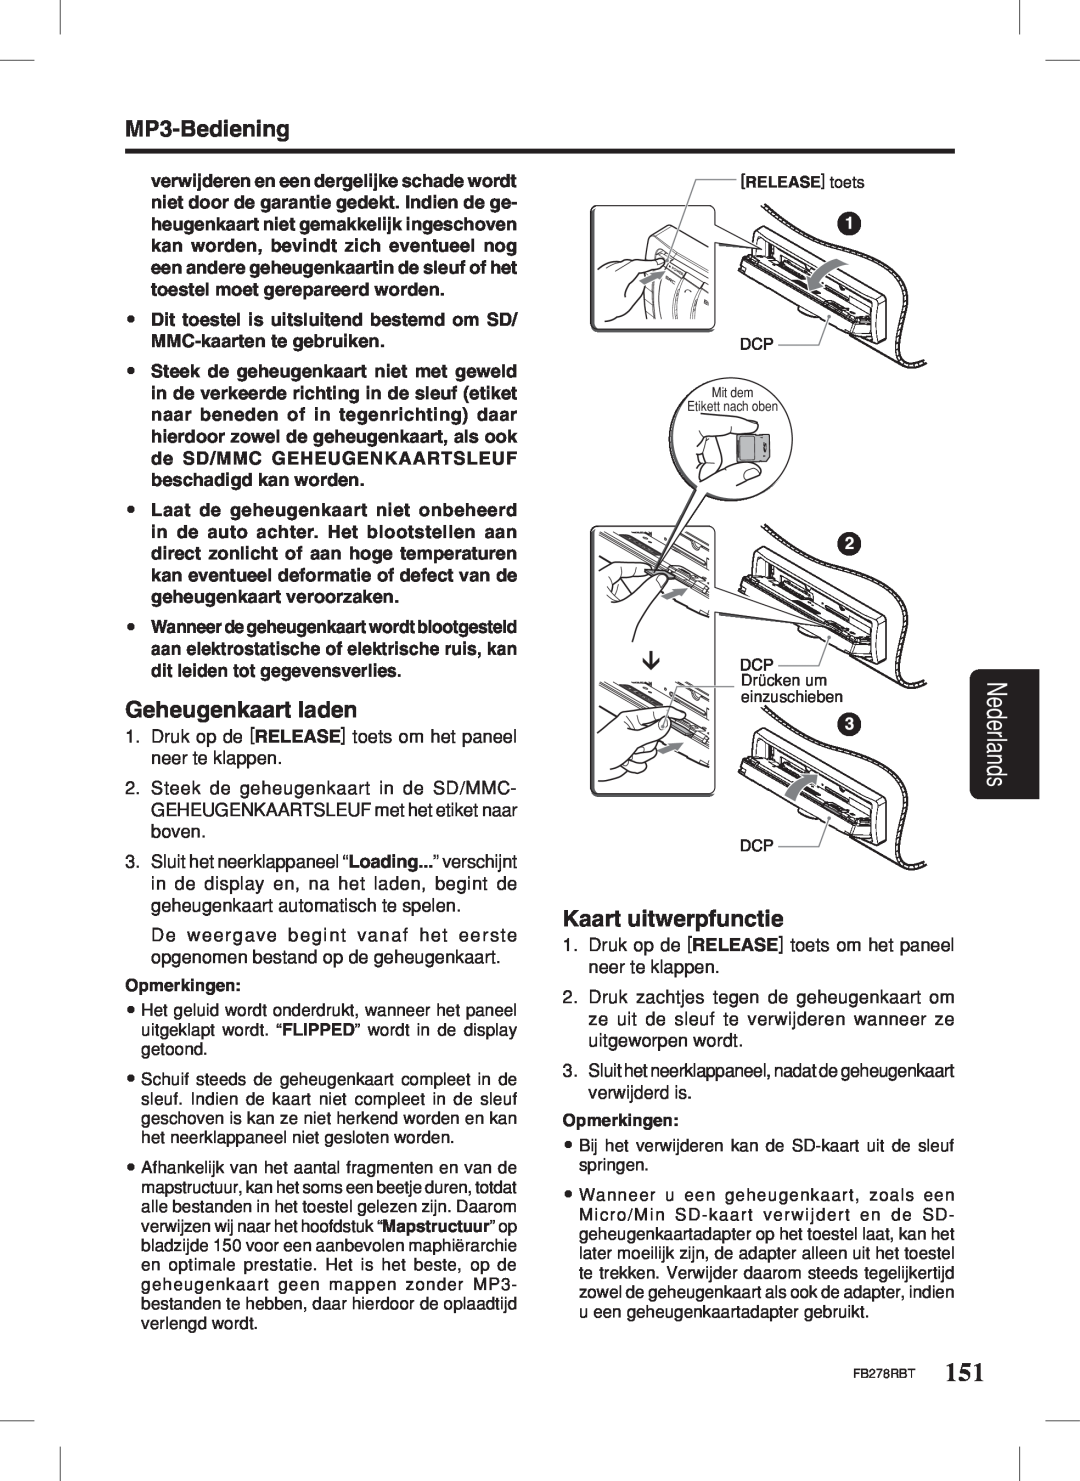 Clarion FB278RBT manual Geheugenkaart laden, Kaart uitwerpfunctie, MP3-Bediening, Nederlands, Opmerkingen 